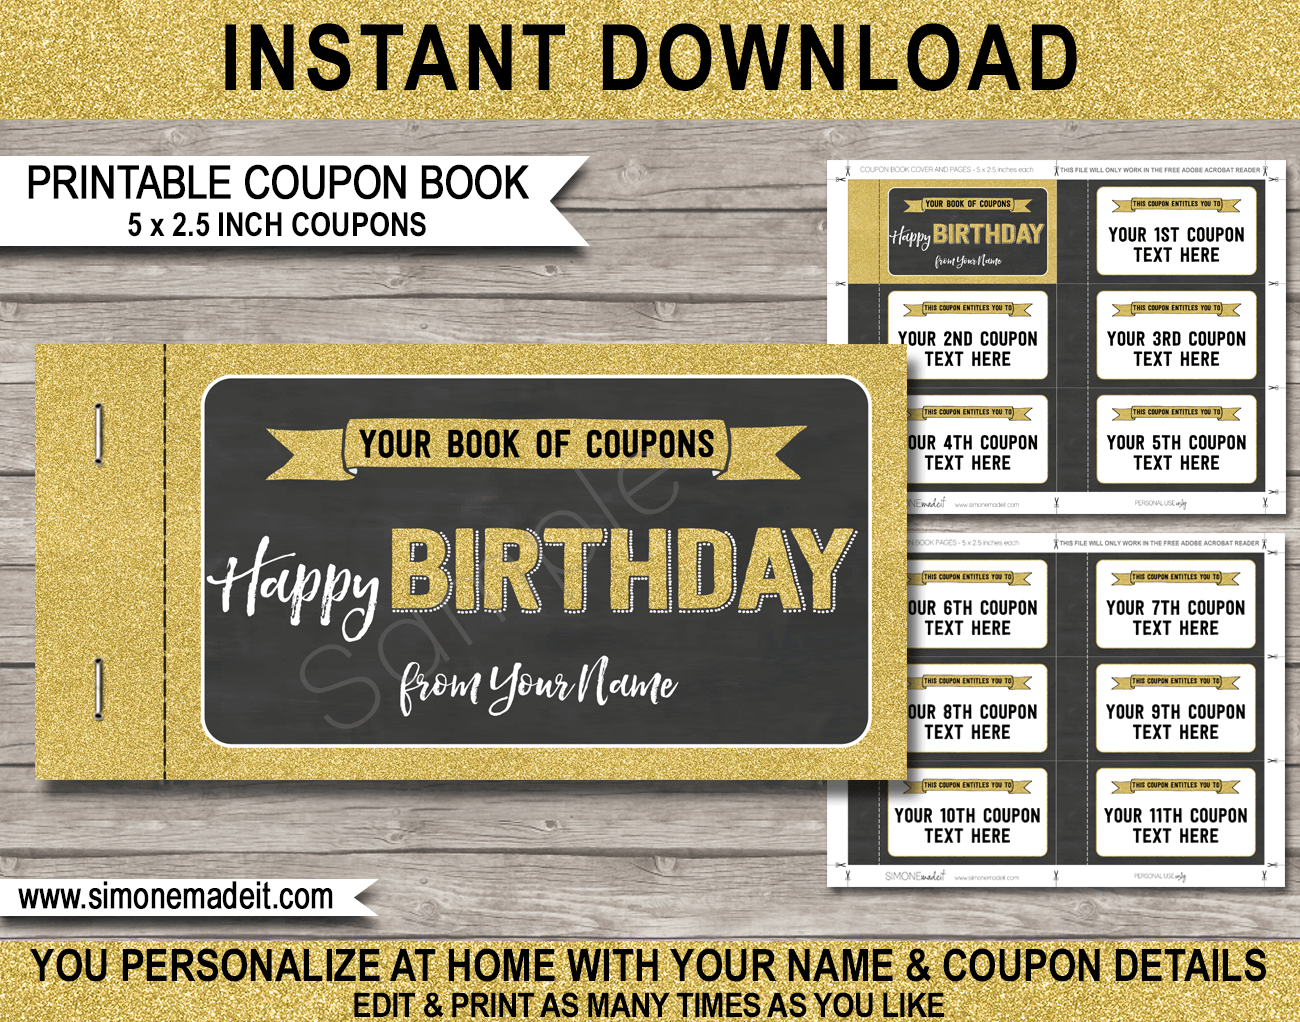 Printable coupon with custom image